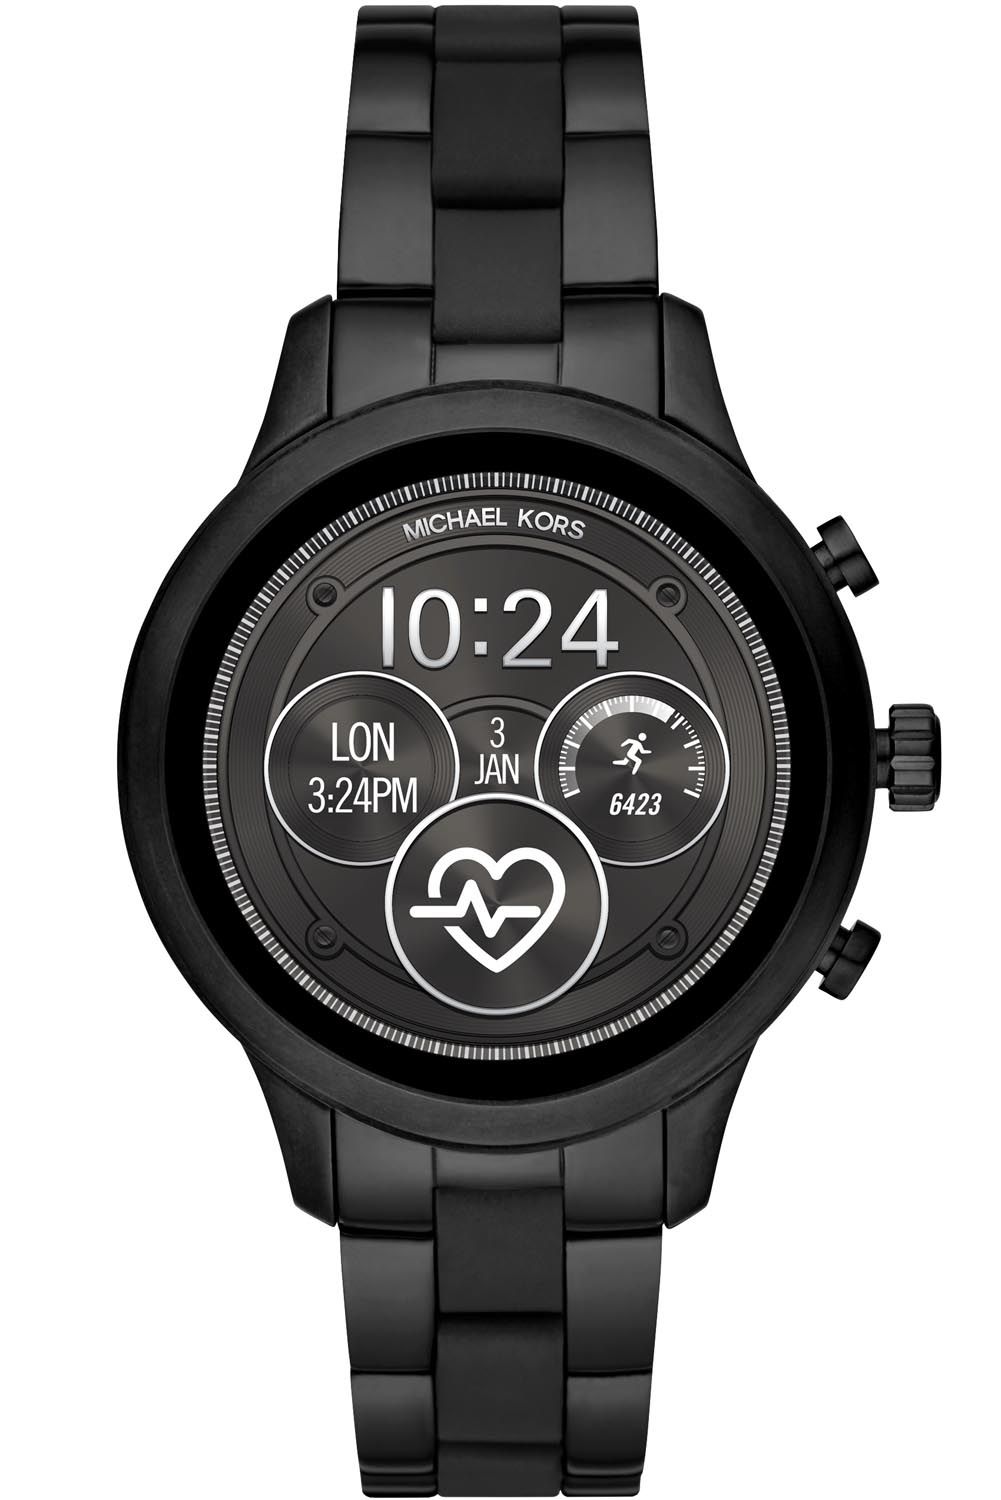 michael kors runway smartwatch release date